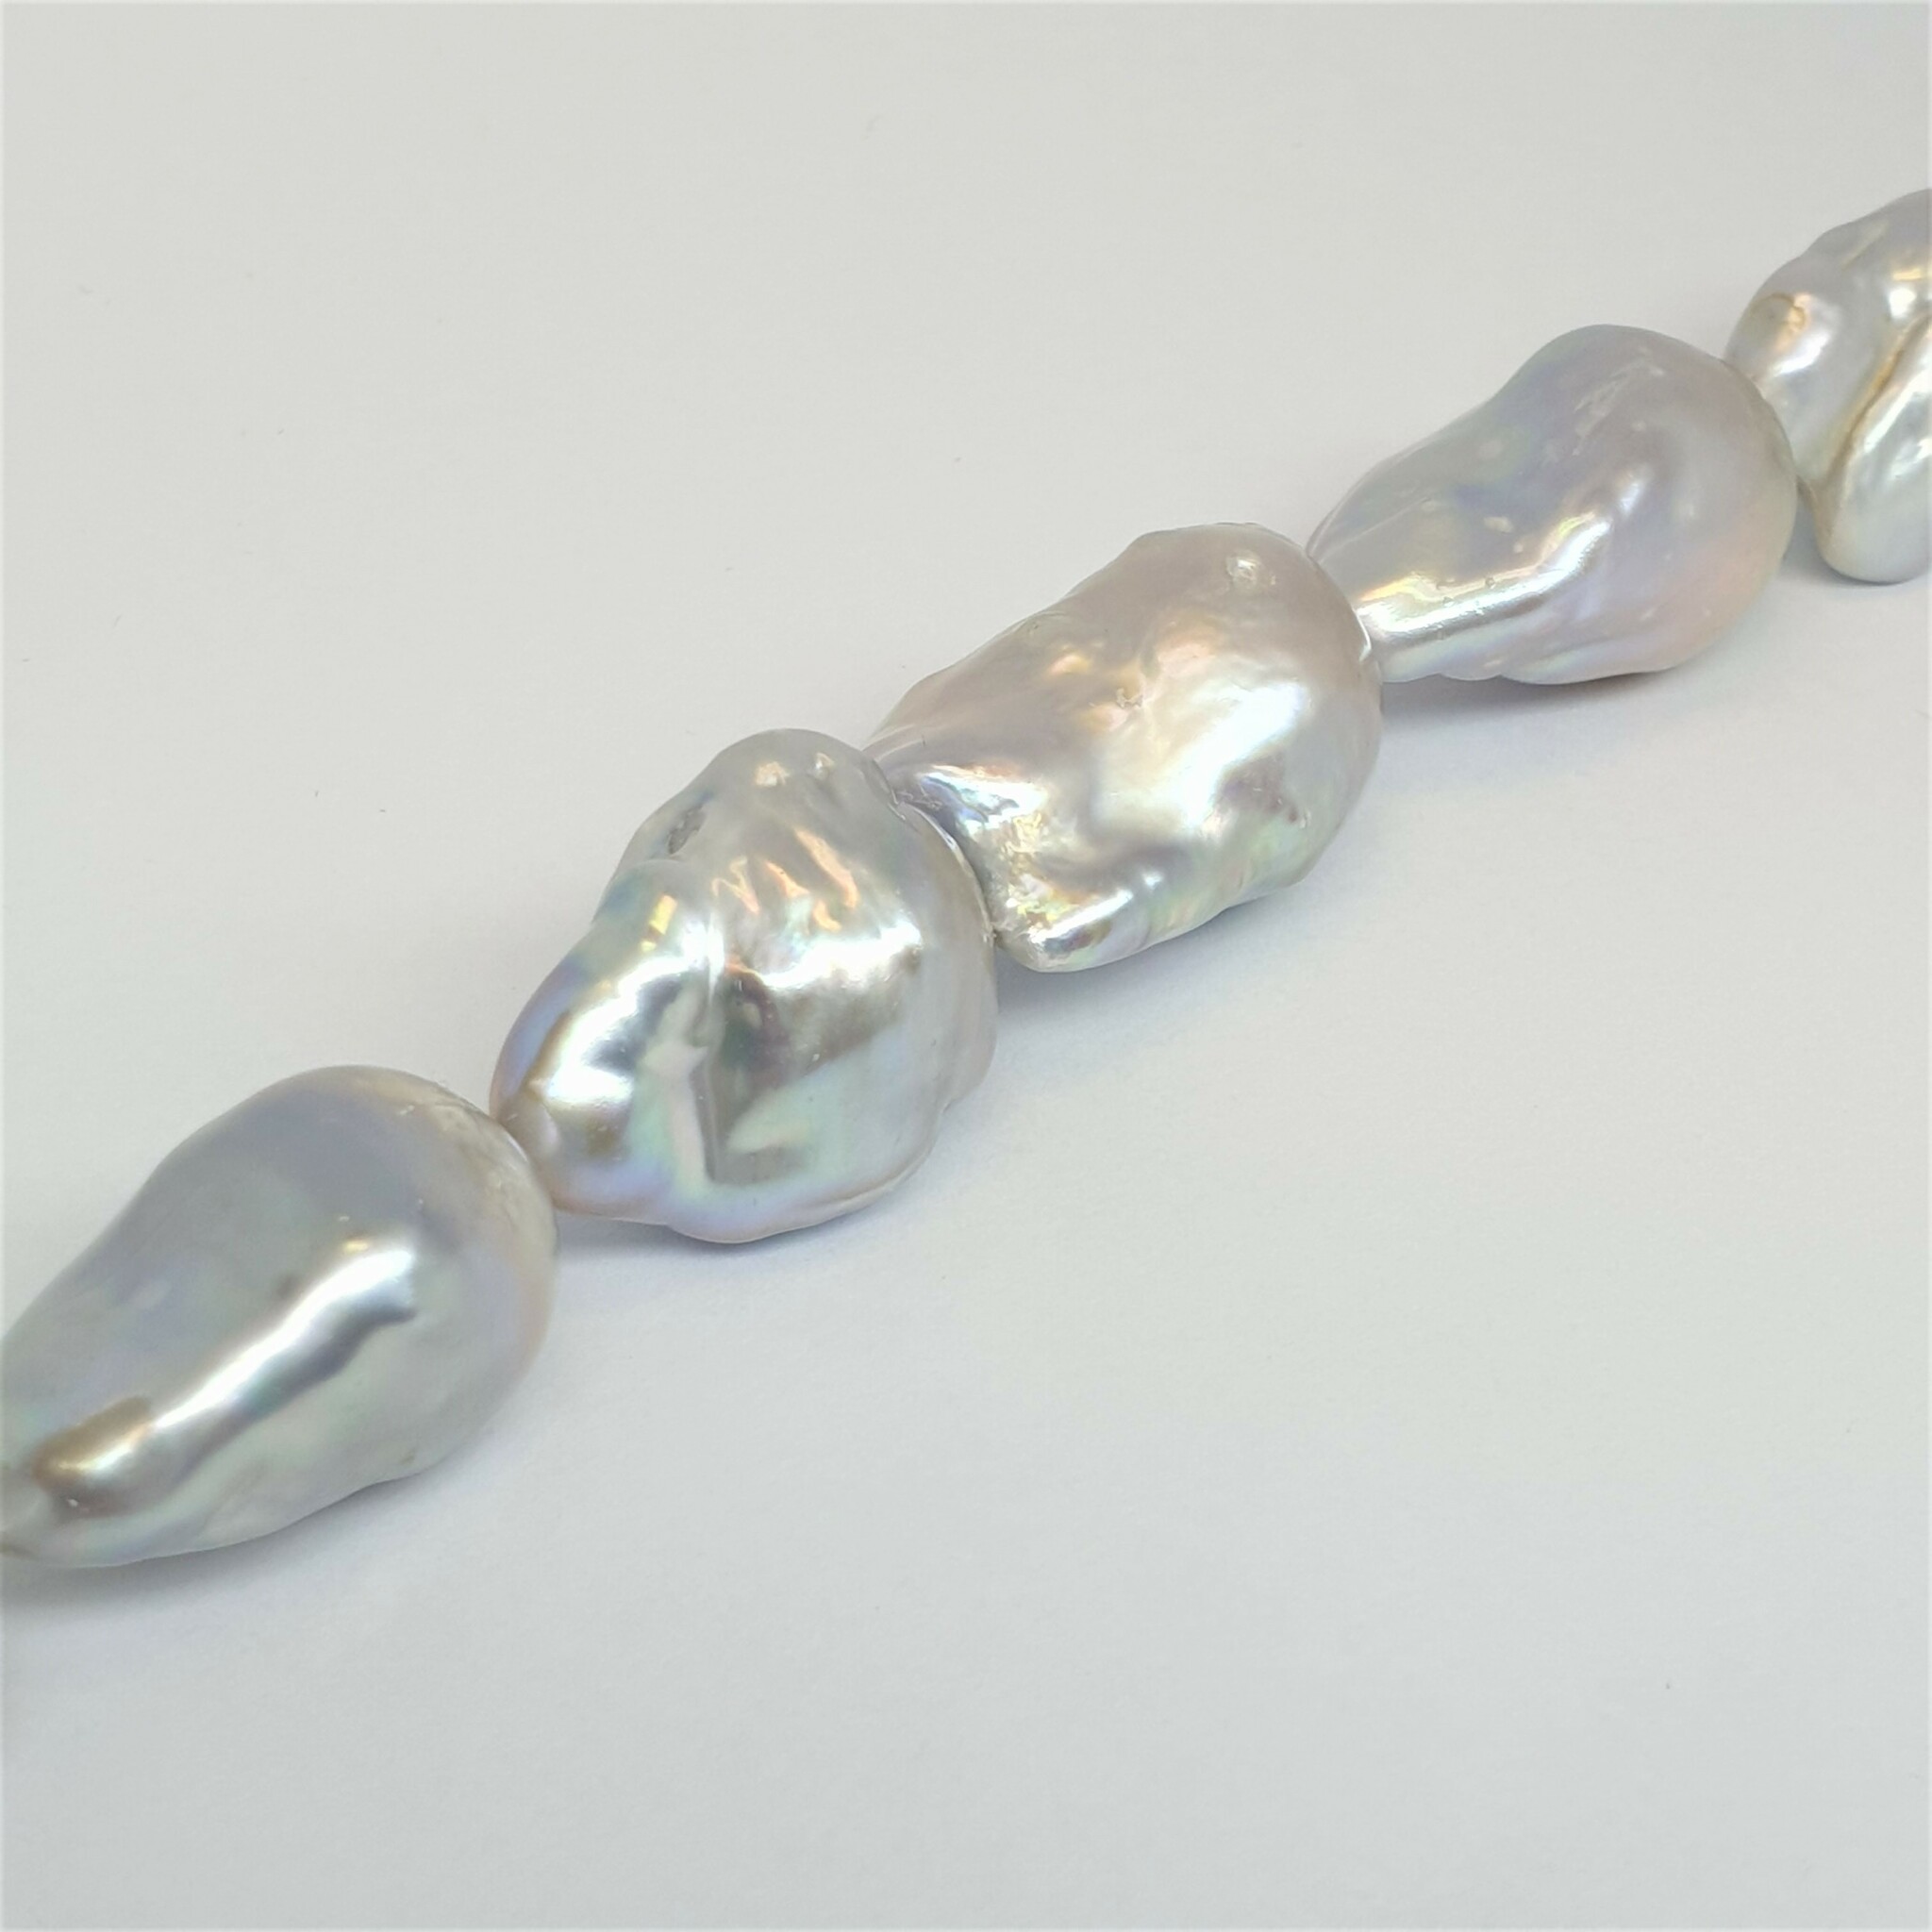 Silvergrå stora barocka pärlor 15x20-24 mm